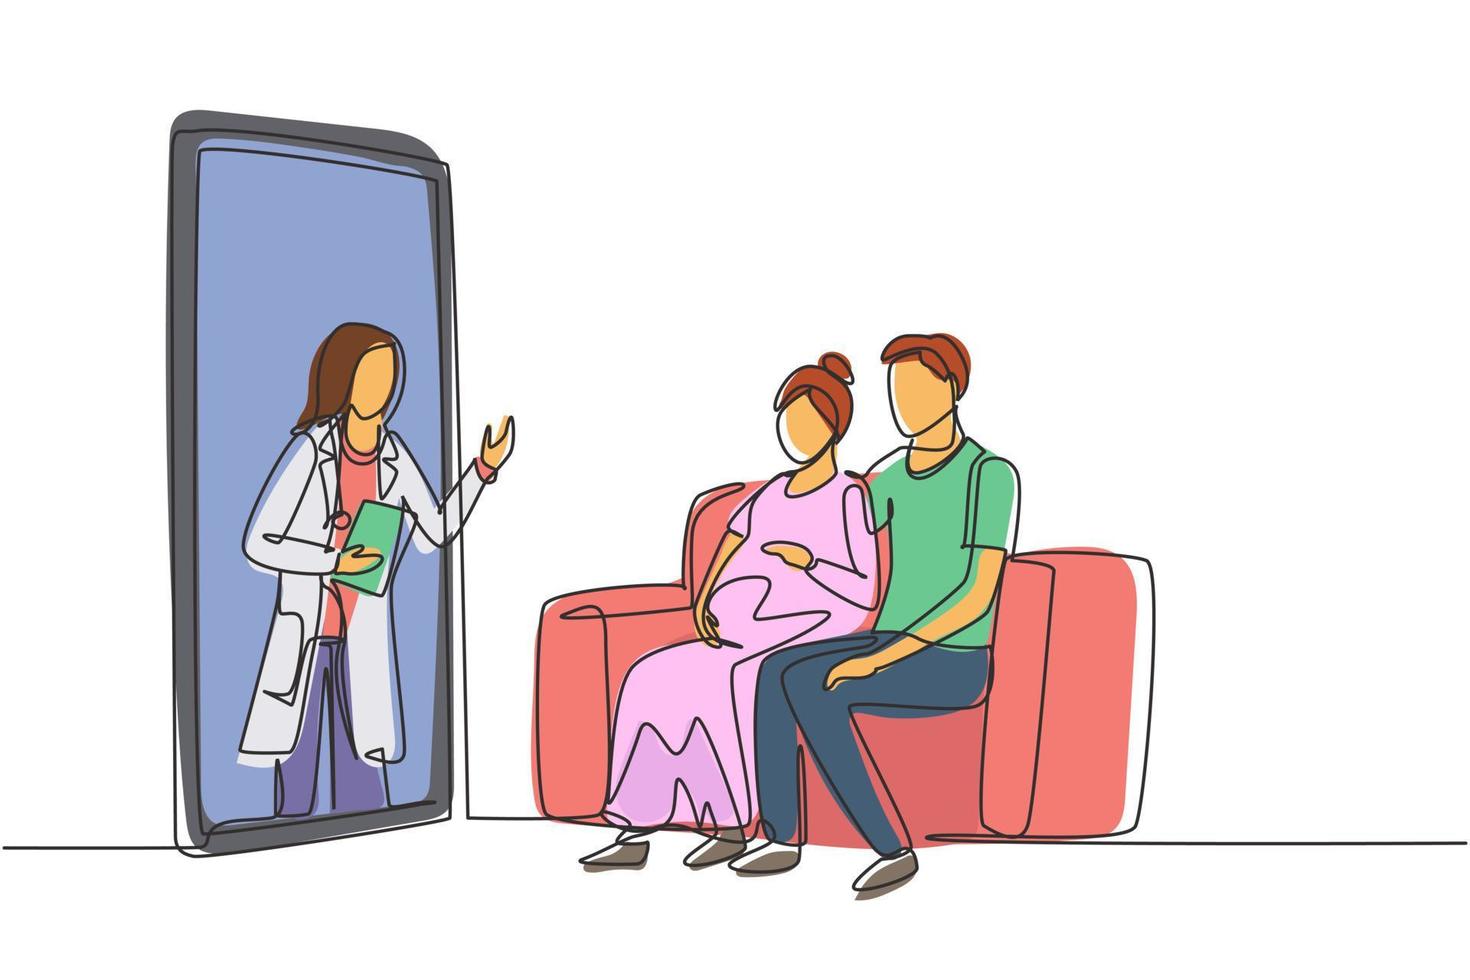 Kontinuierliche eine Linie zeichnende Ärztin kommt aus dem Smartphone-Bildschirm, der dem Patienten zugewandt ist, und berät das junge Paar des Patienten mit der schwangeren Frau. Single Line Draw Design Vektorgrafik vektor